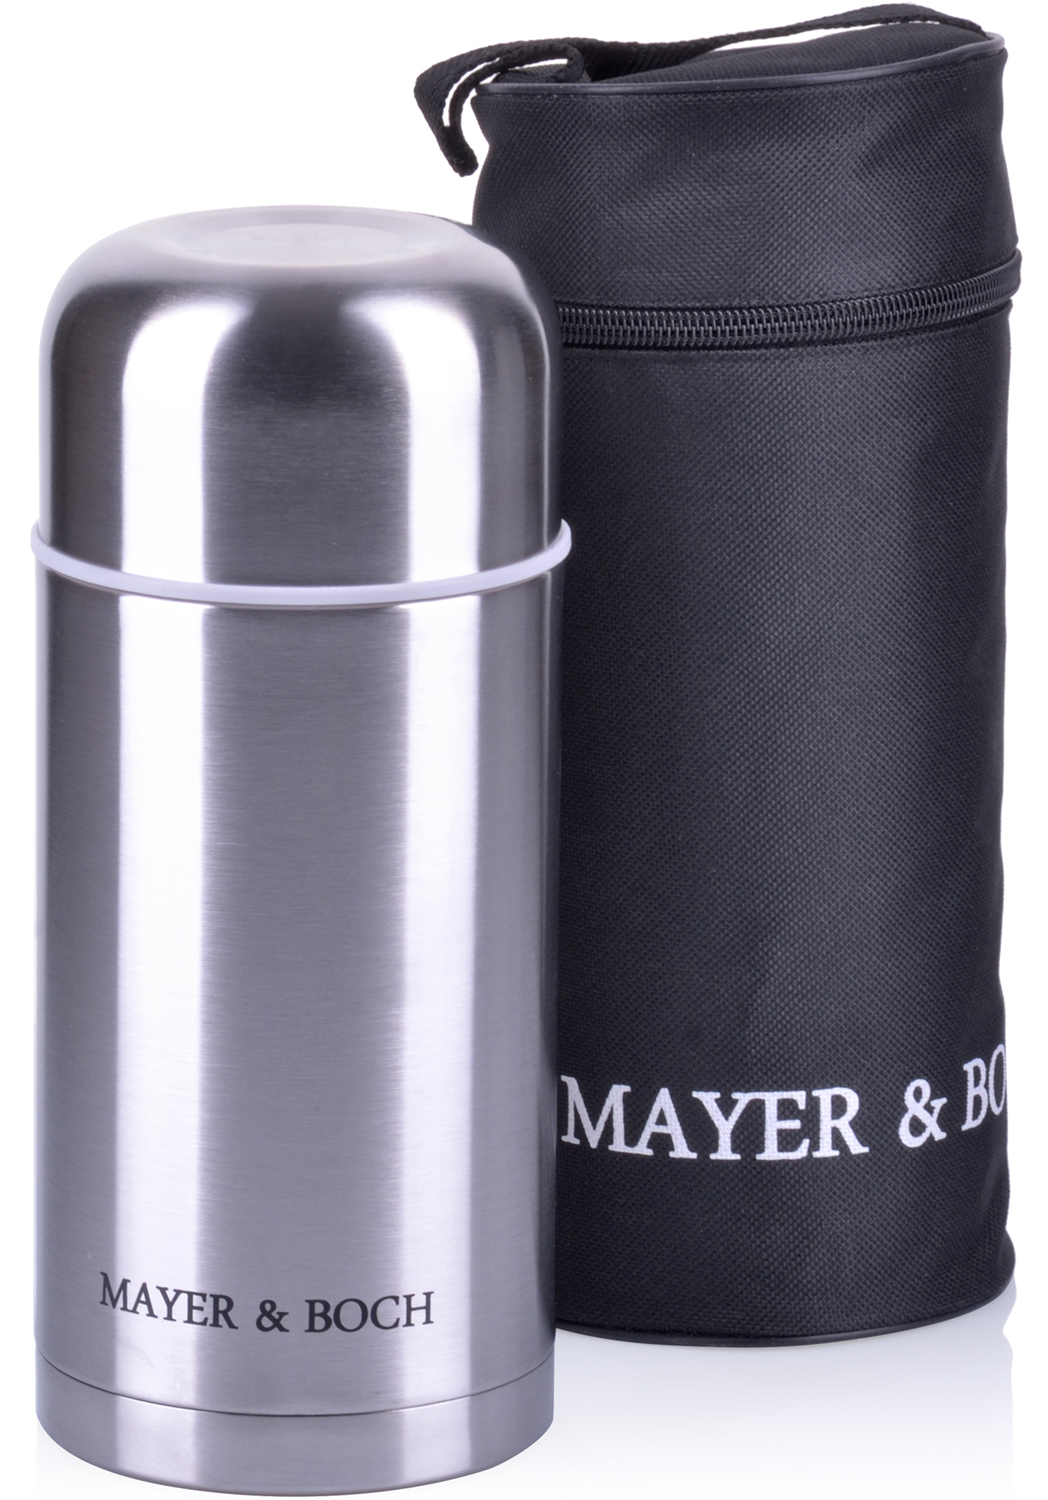 фото Термос Mayer & Boch, с чехлом, цвет: серебристый, объем 1 л